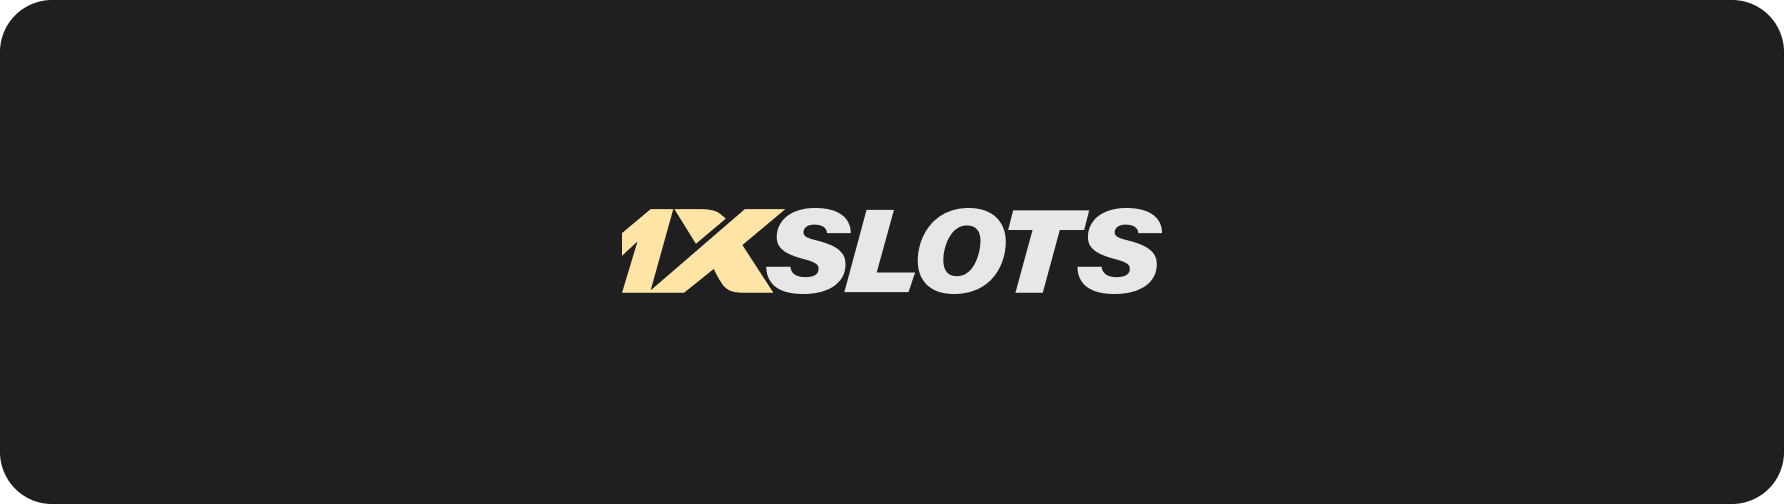 1xSlots Casino: Segurança e Confiança para você